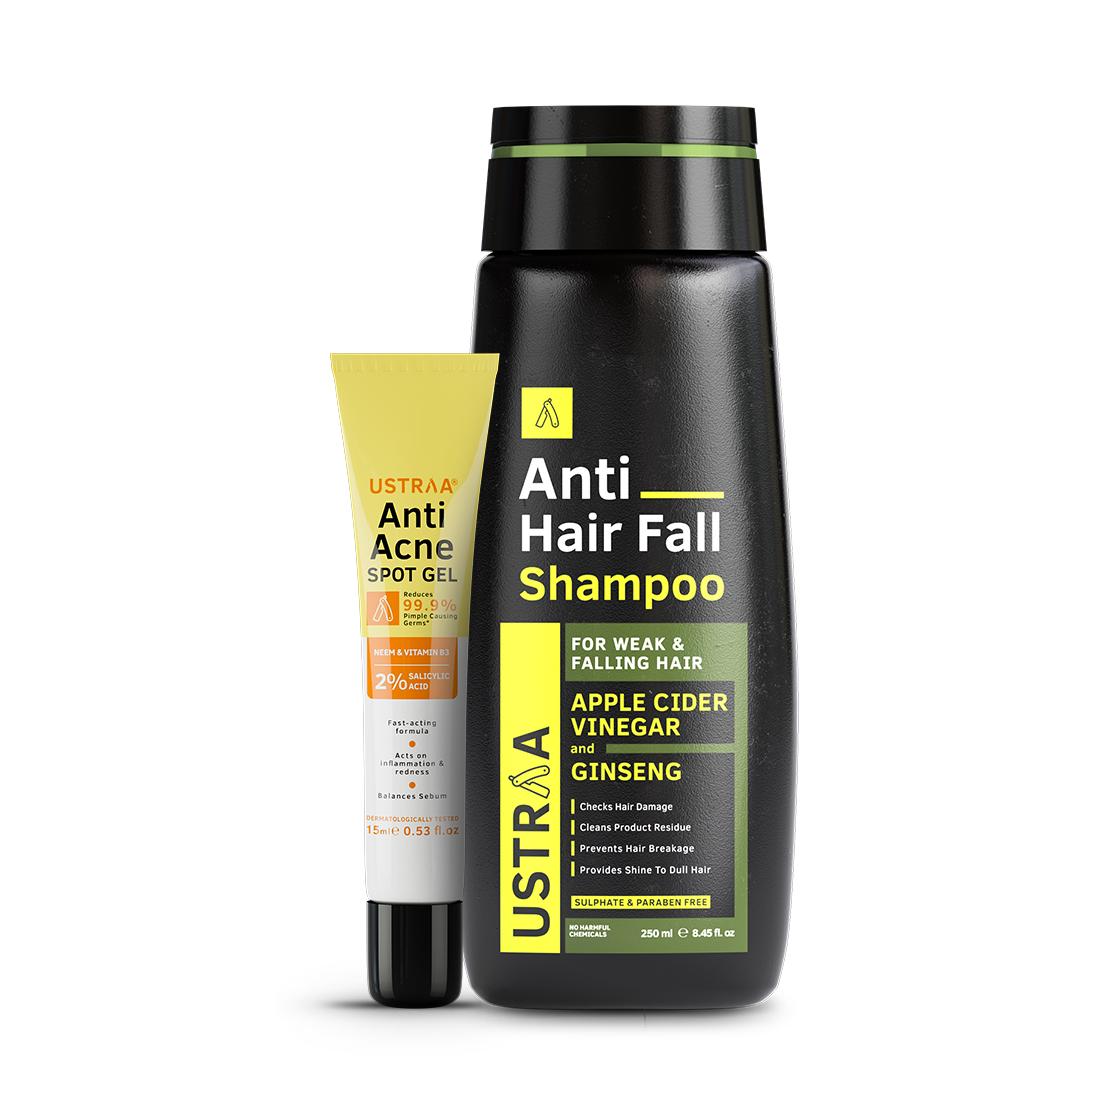 Anti Acne Spot Gel & Anti Hair Fall Shampoo